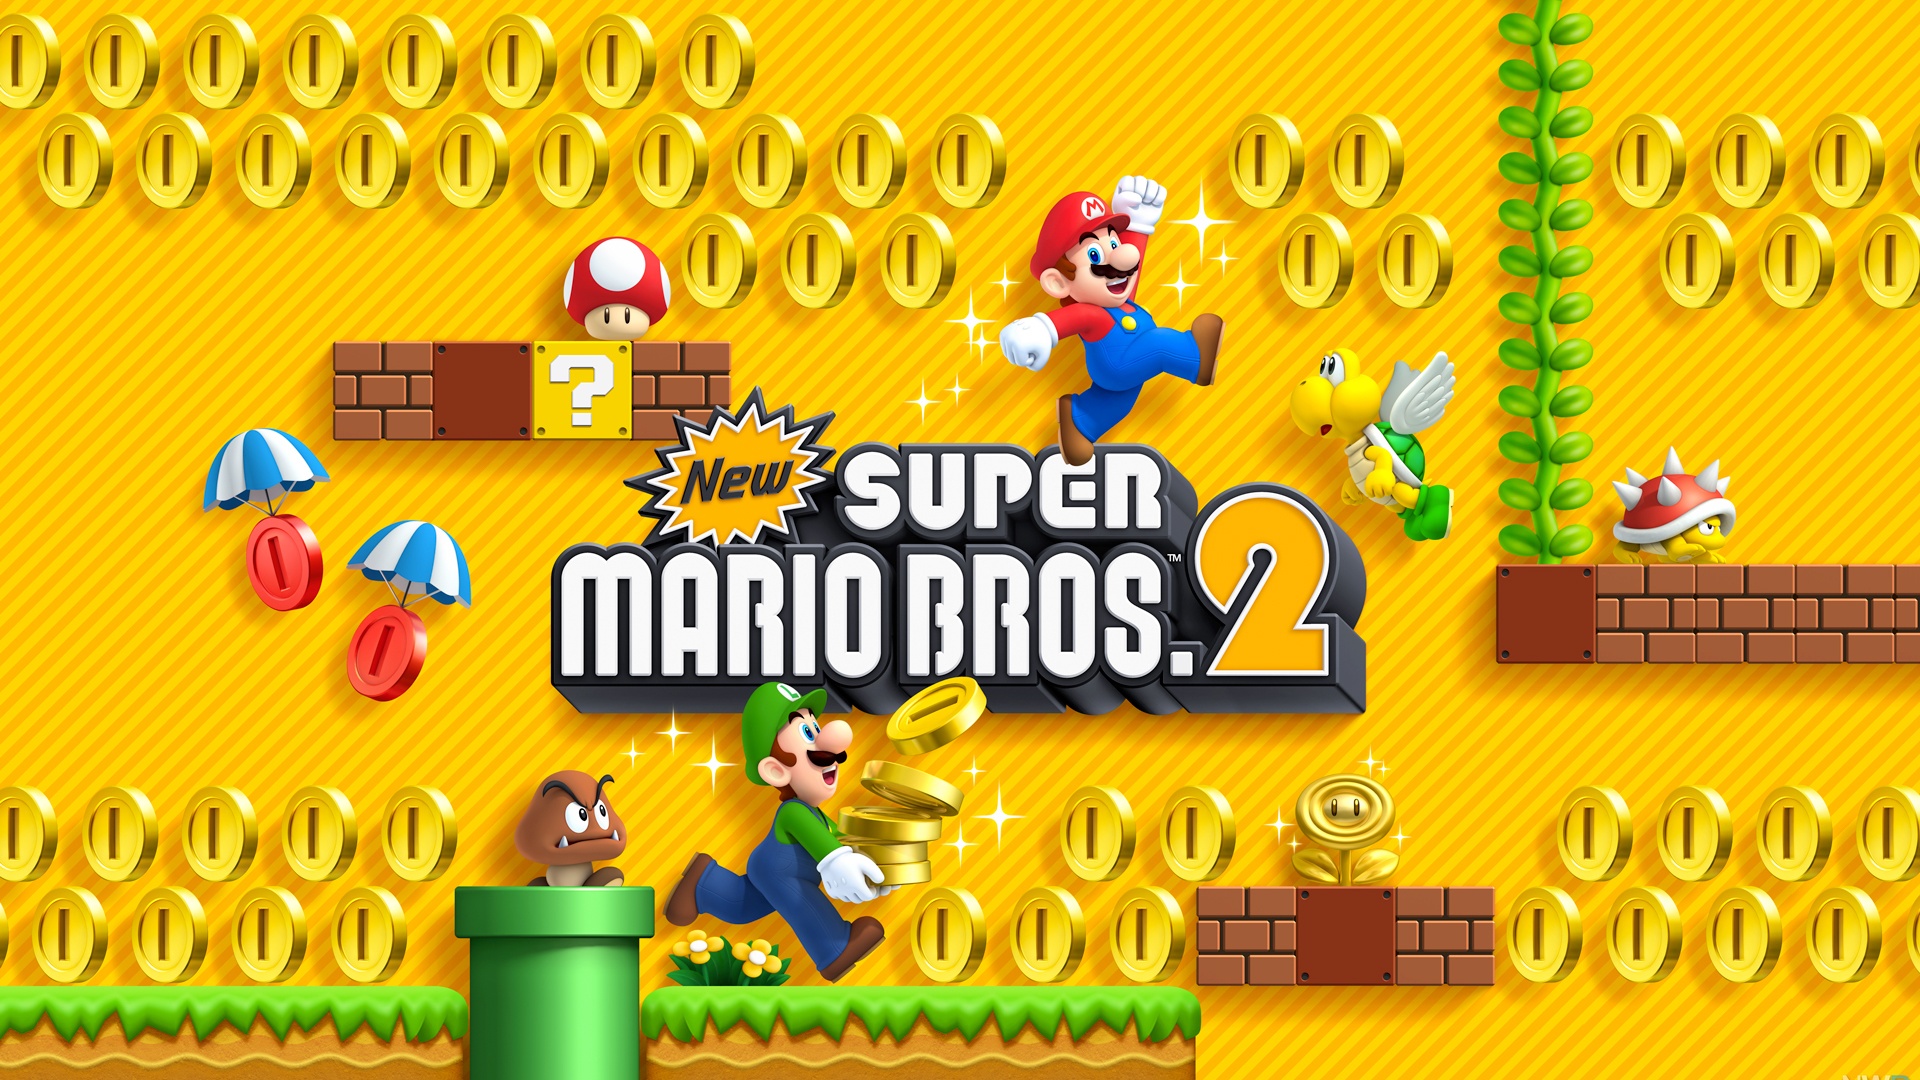 Популярные заставки и фоны Новые Super Mario Bros 2 на компьютер